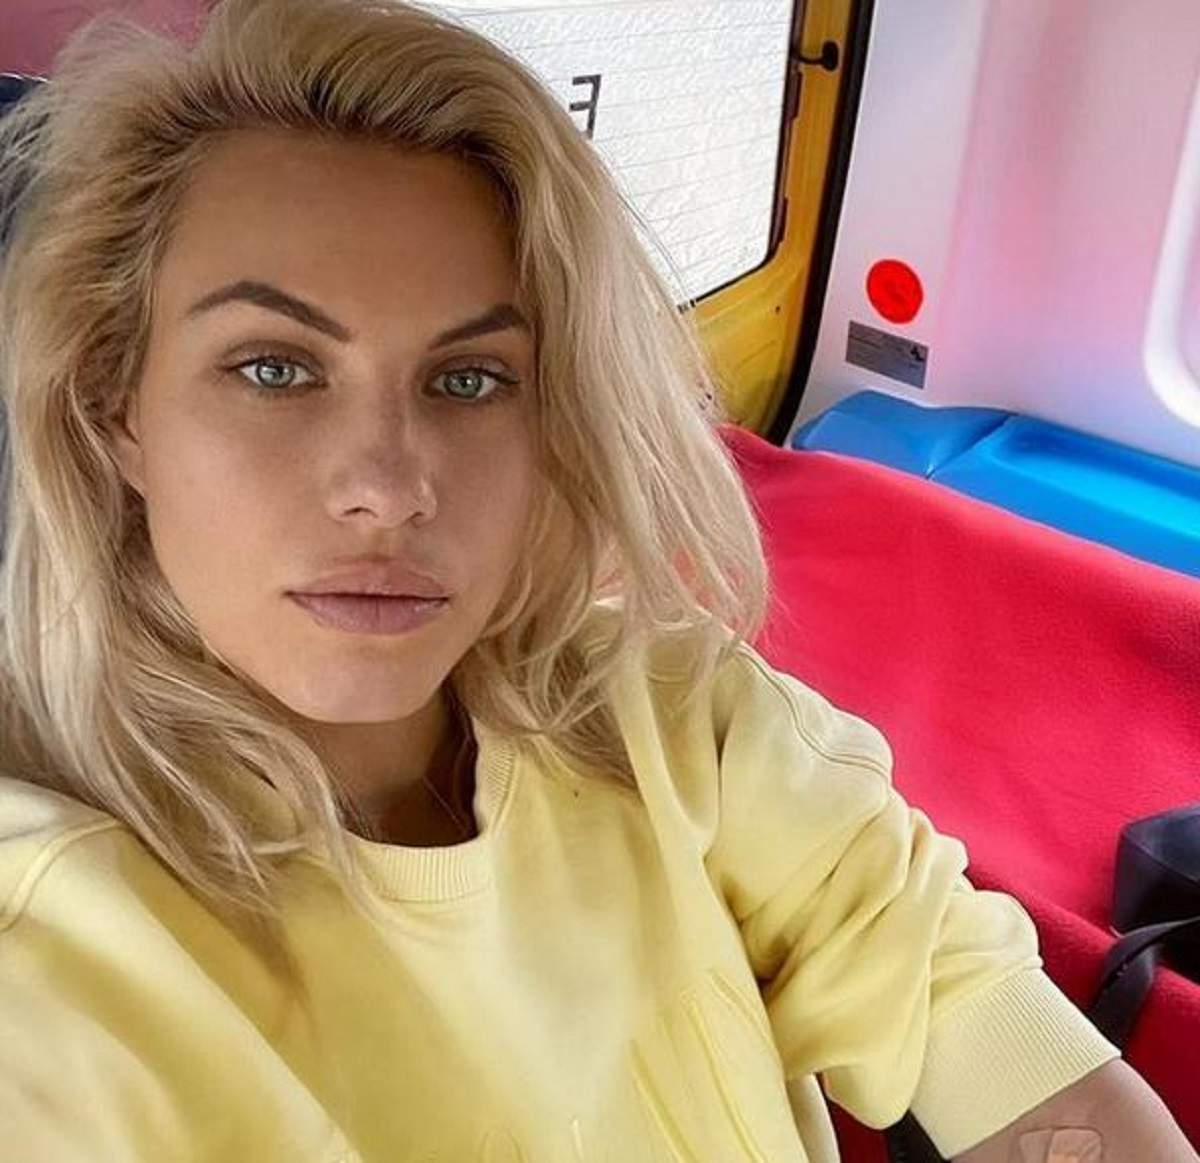 Amna poartă o bluză galbenă și își face un selfie. Artista e în Ambulanță.